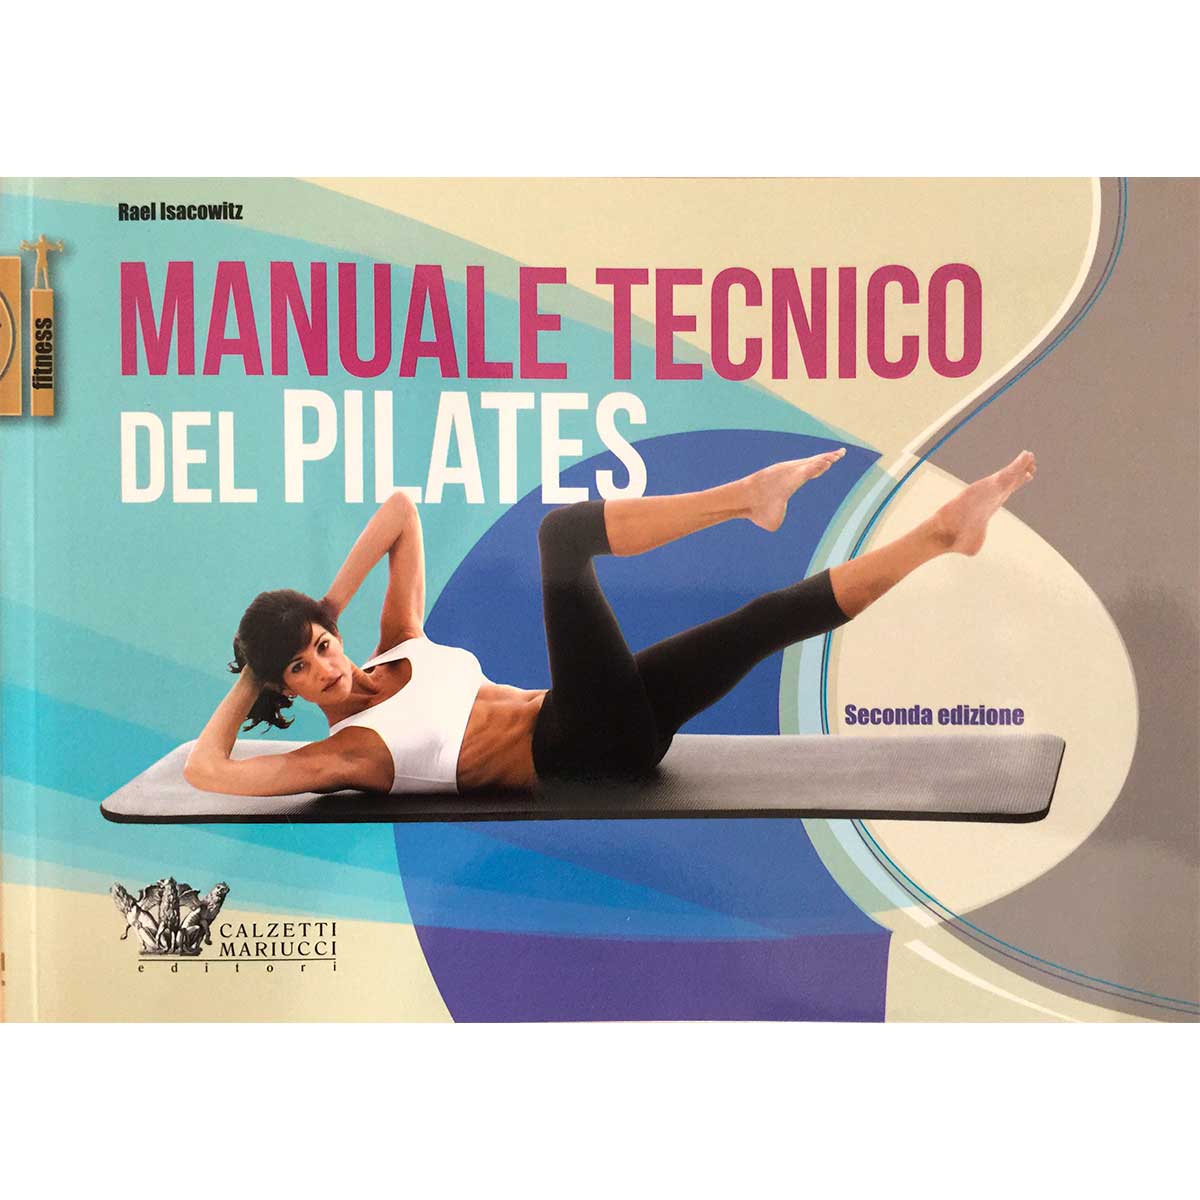 Manuale Tecnico del Pilates seconda edizione